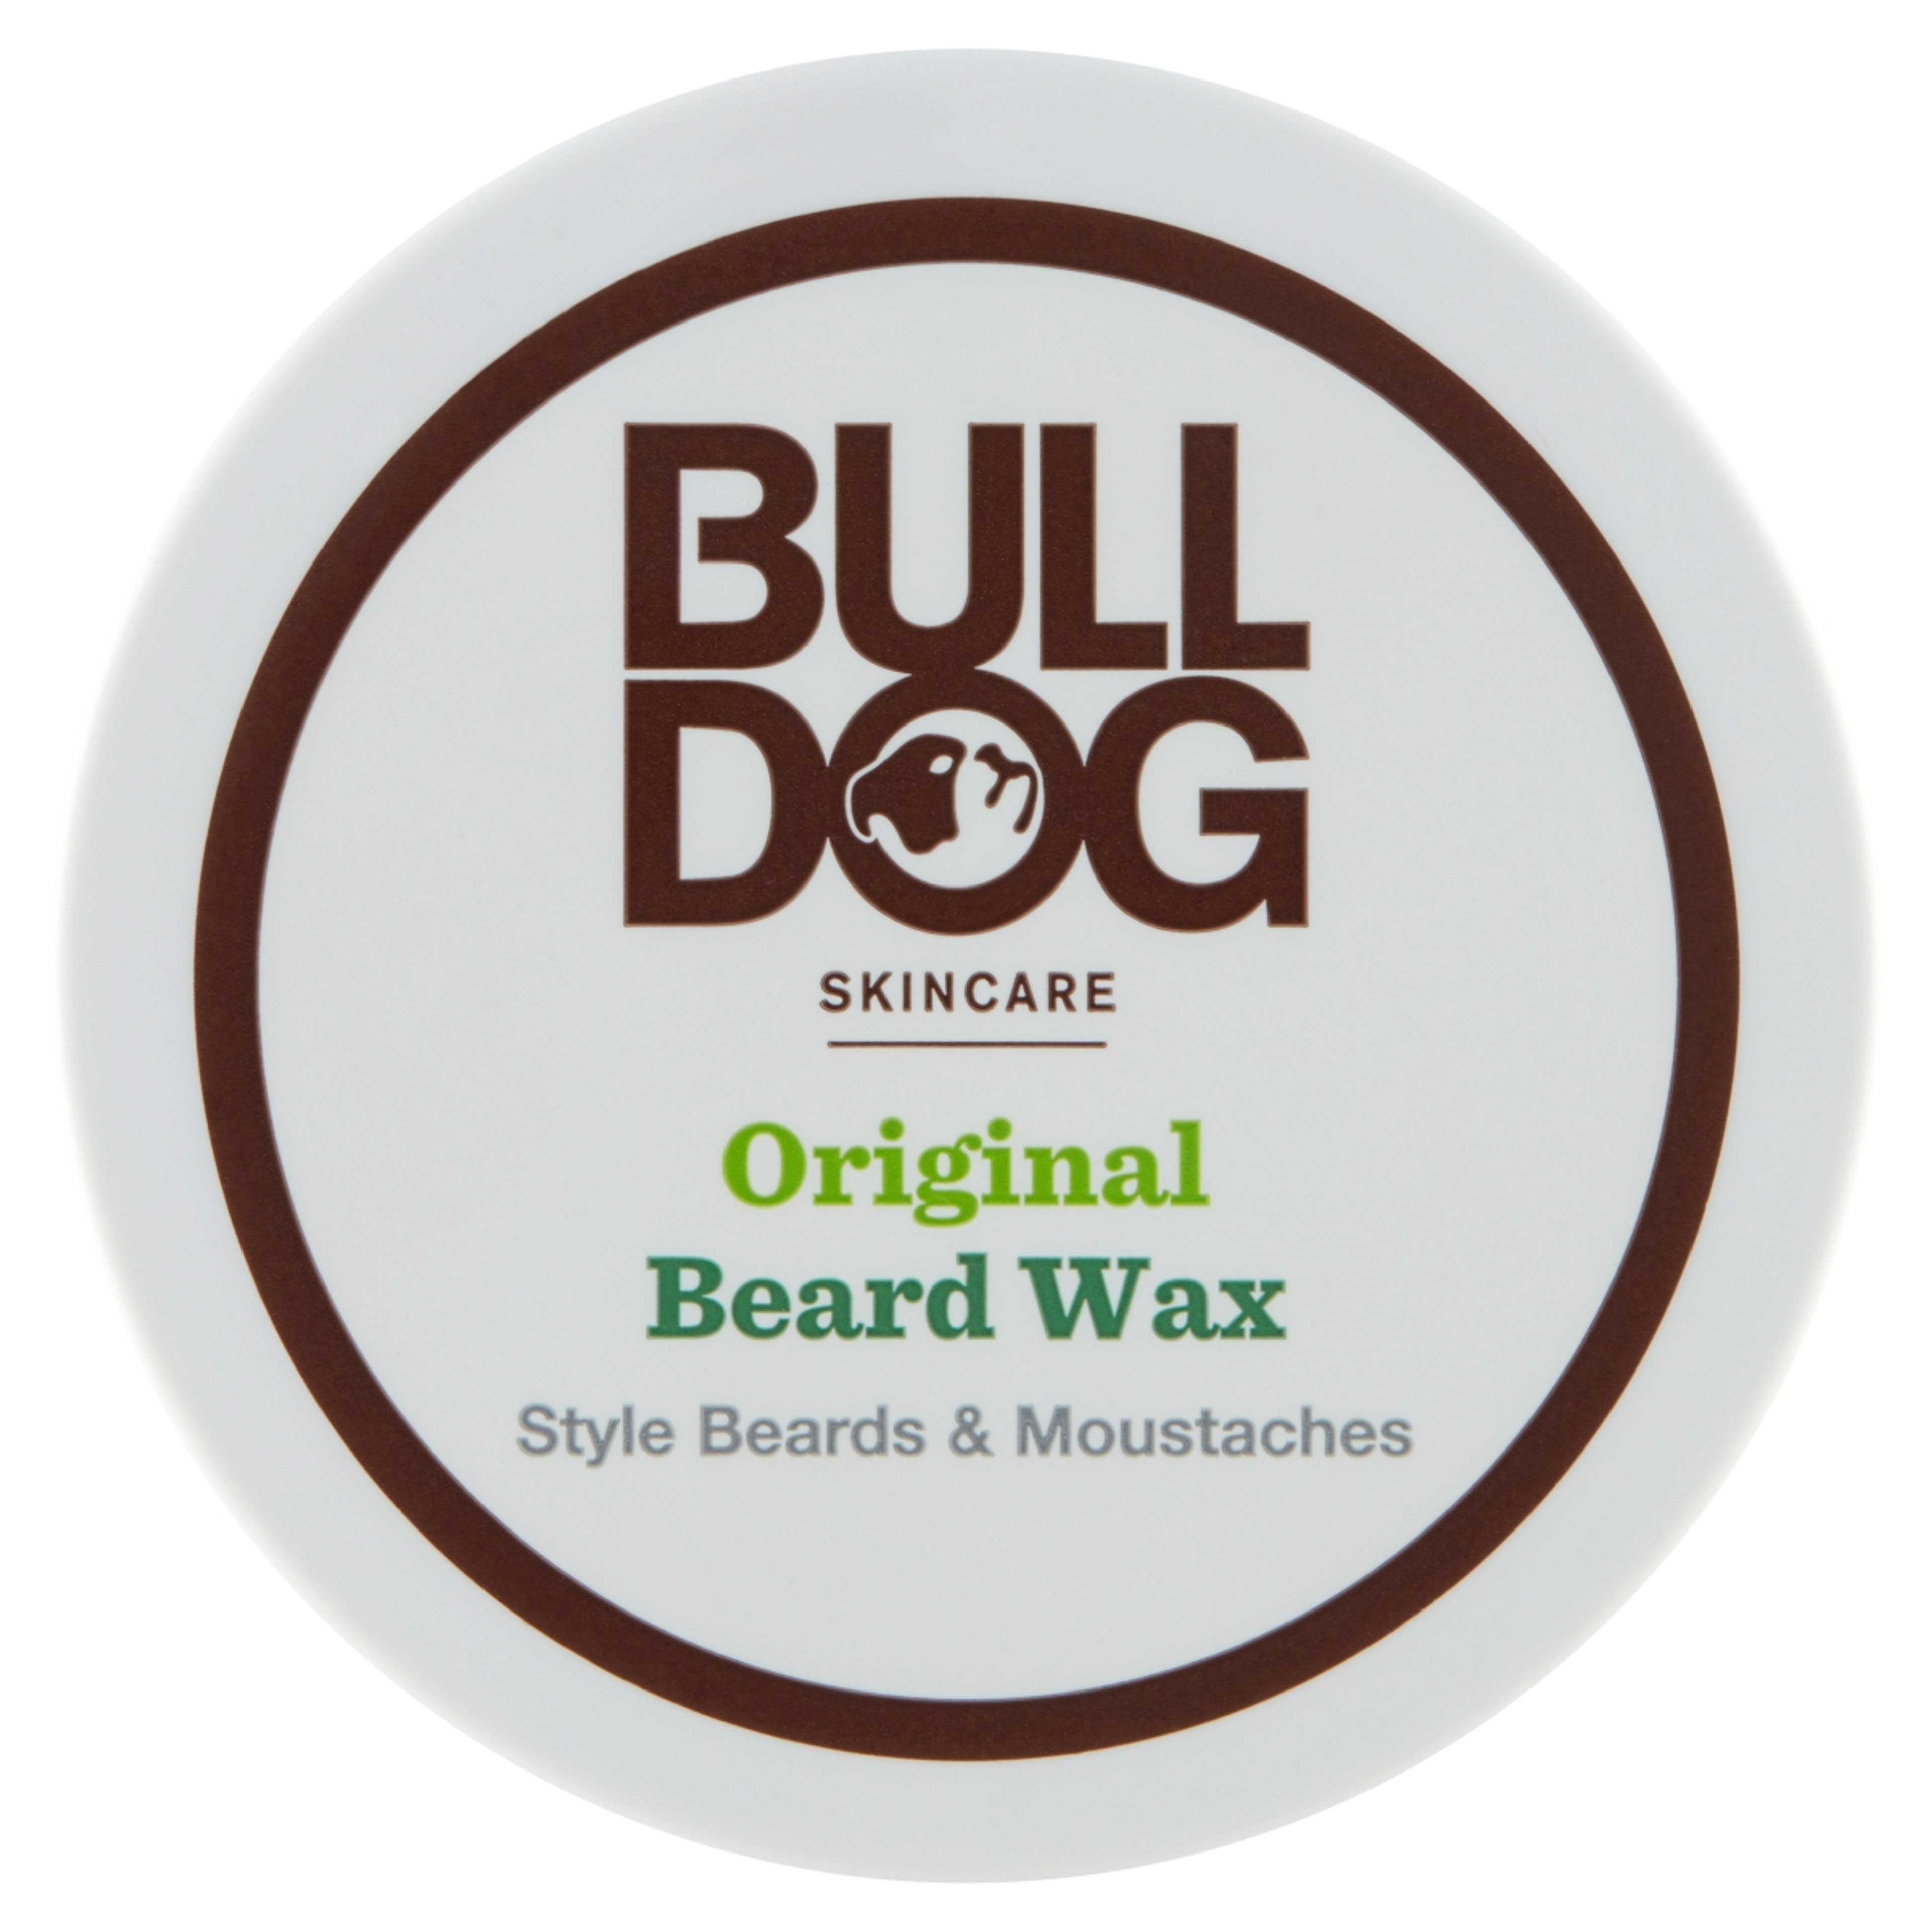 Bulldog Original szakállápoló wax - 50 ml